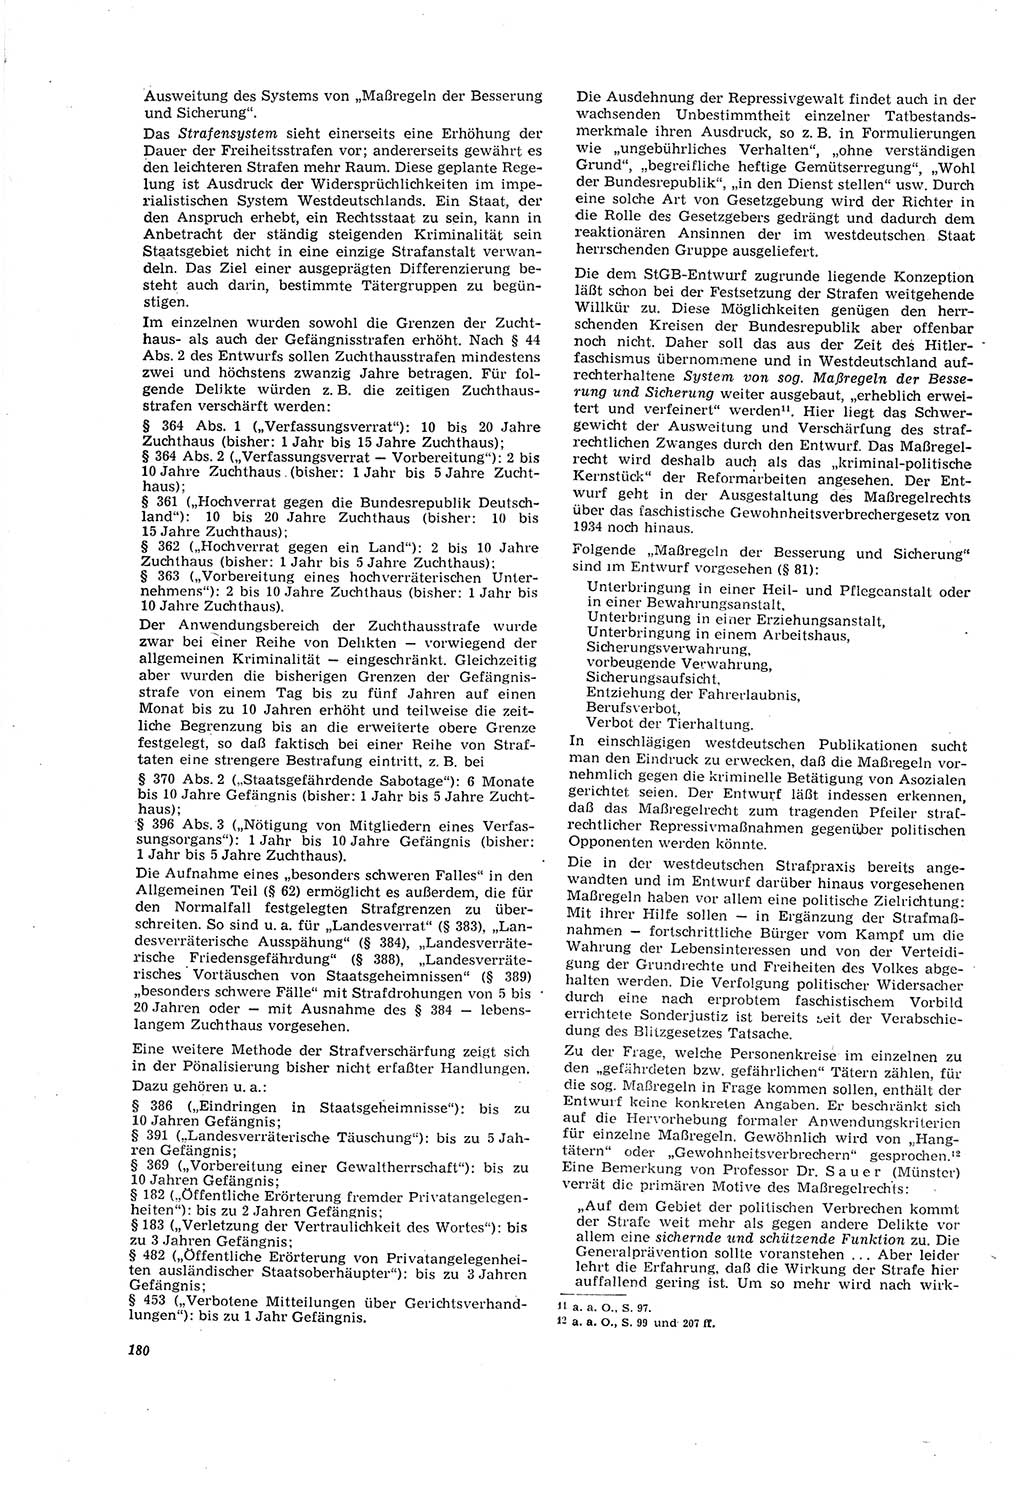 Neue Justiz (NJ), Zeitschrift für Recht und Rechtswissenschaft [Deutsche Demokratische Republik (DDR)], 20. Jahrgang 1966, Seite 180 (NJ DDR 1966, S. 180)